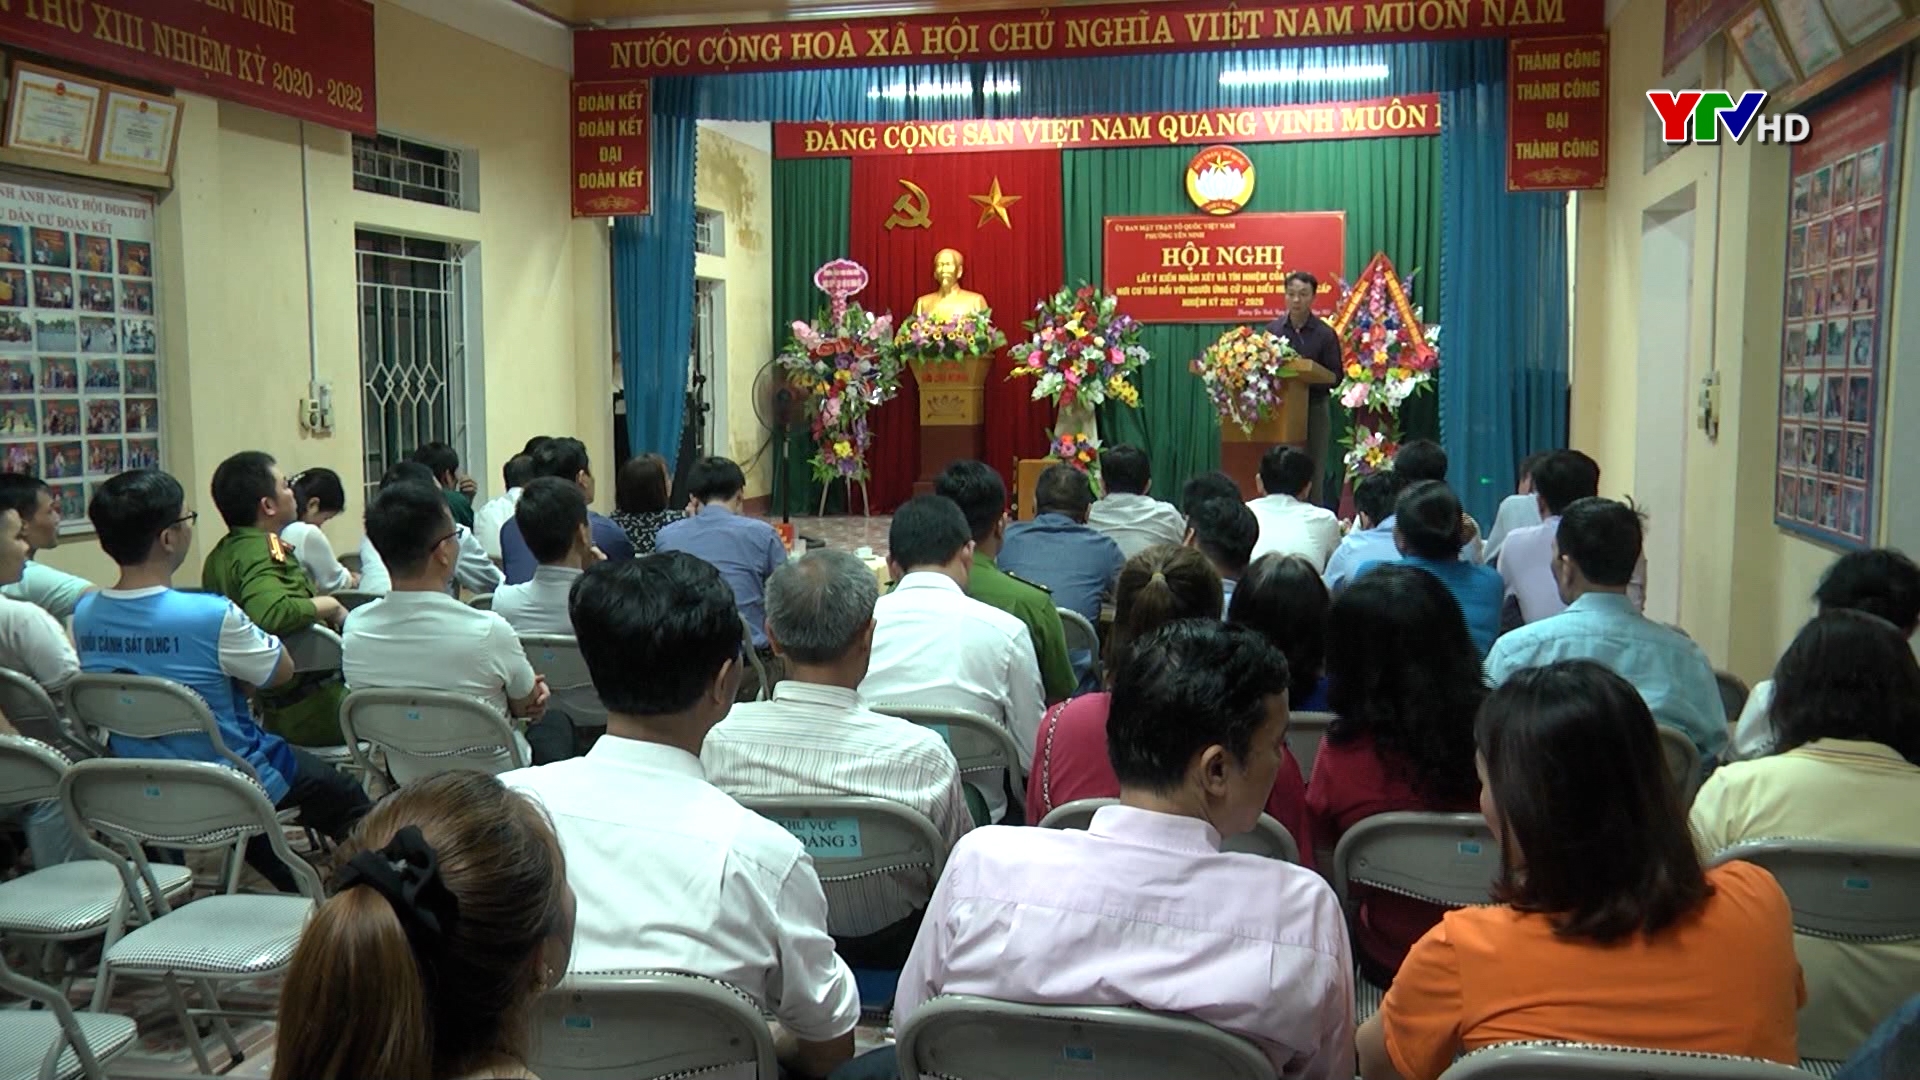 Hội nghị lấy ý kiến nhận xét của cử tri nơi cư trú đối với người ứng cử ĐBQH và HĐND các cấp tại tổ dân phố số 5, phường Yên Ninh, TP Yên Bái